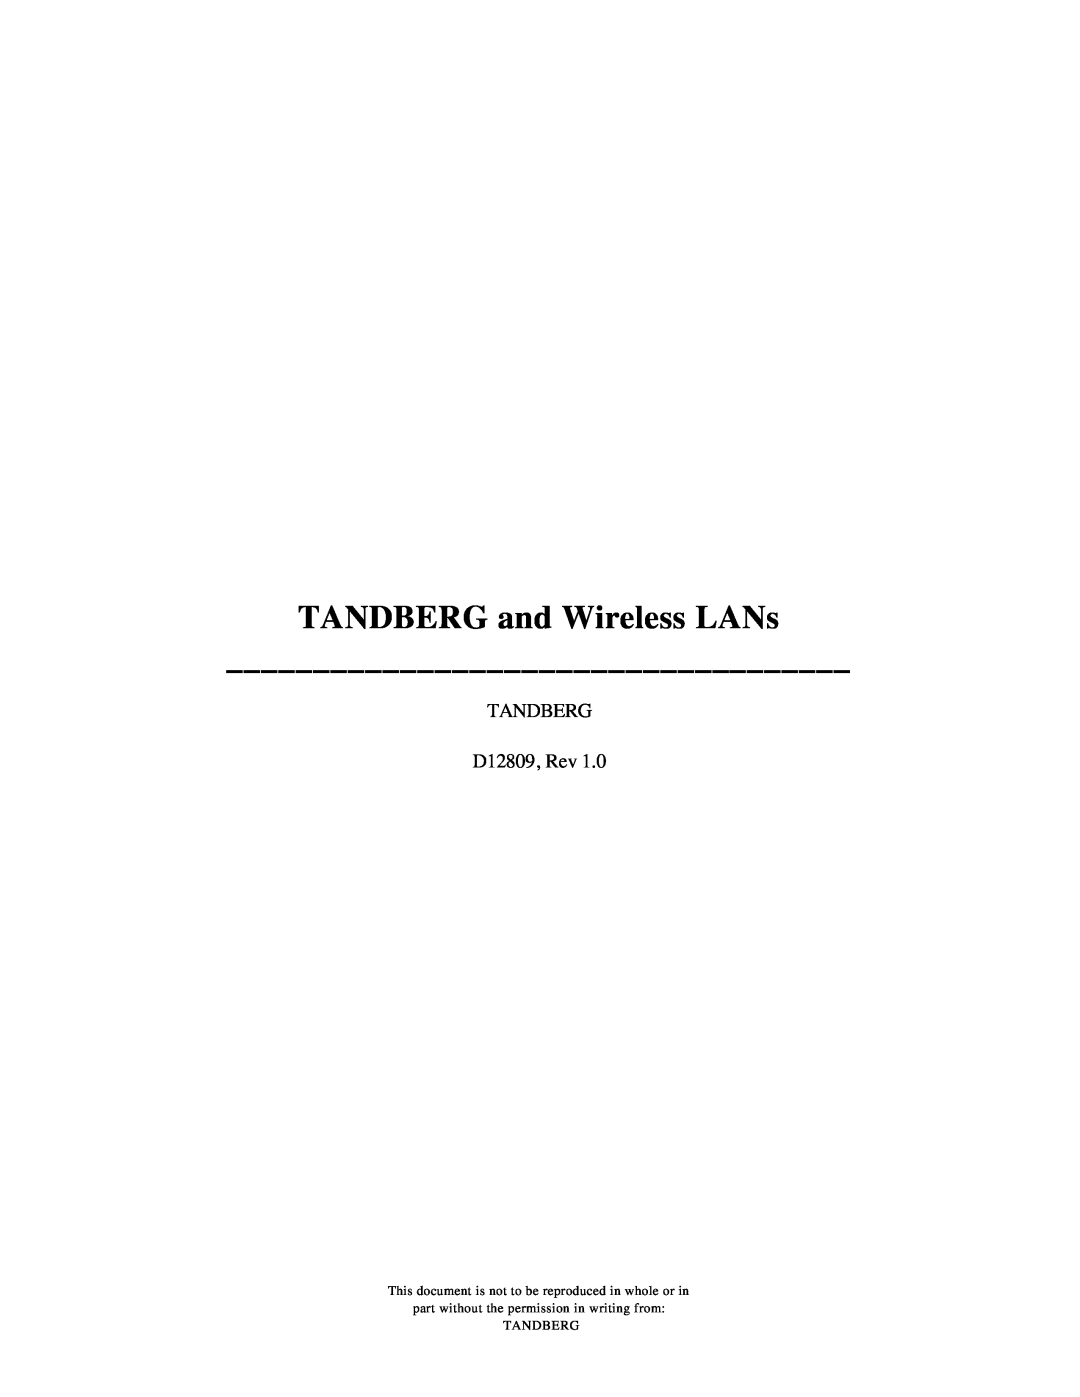 TANDBERG manual TANDBERG and Wireless LANs, TANDBERG D12809, Rev, Tandberg 